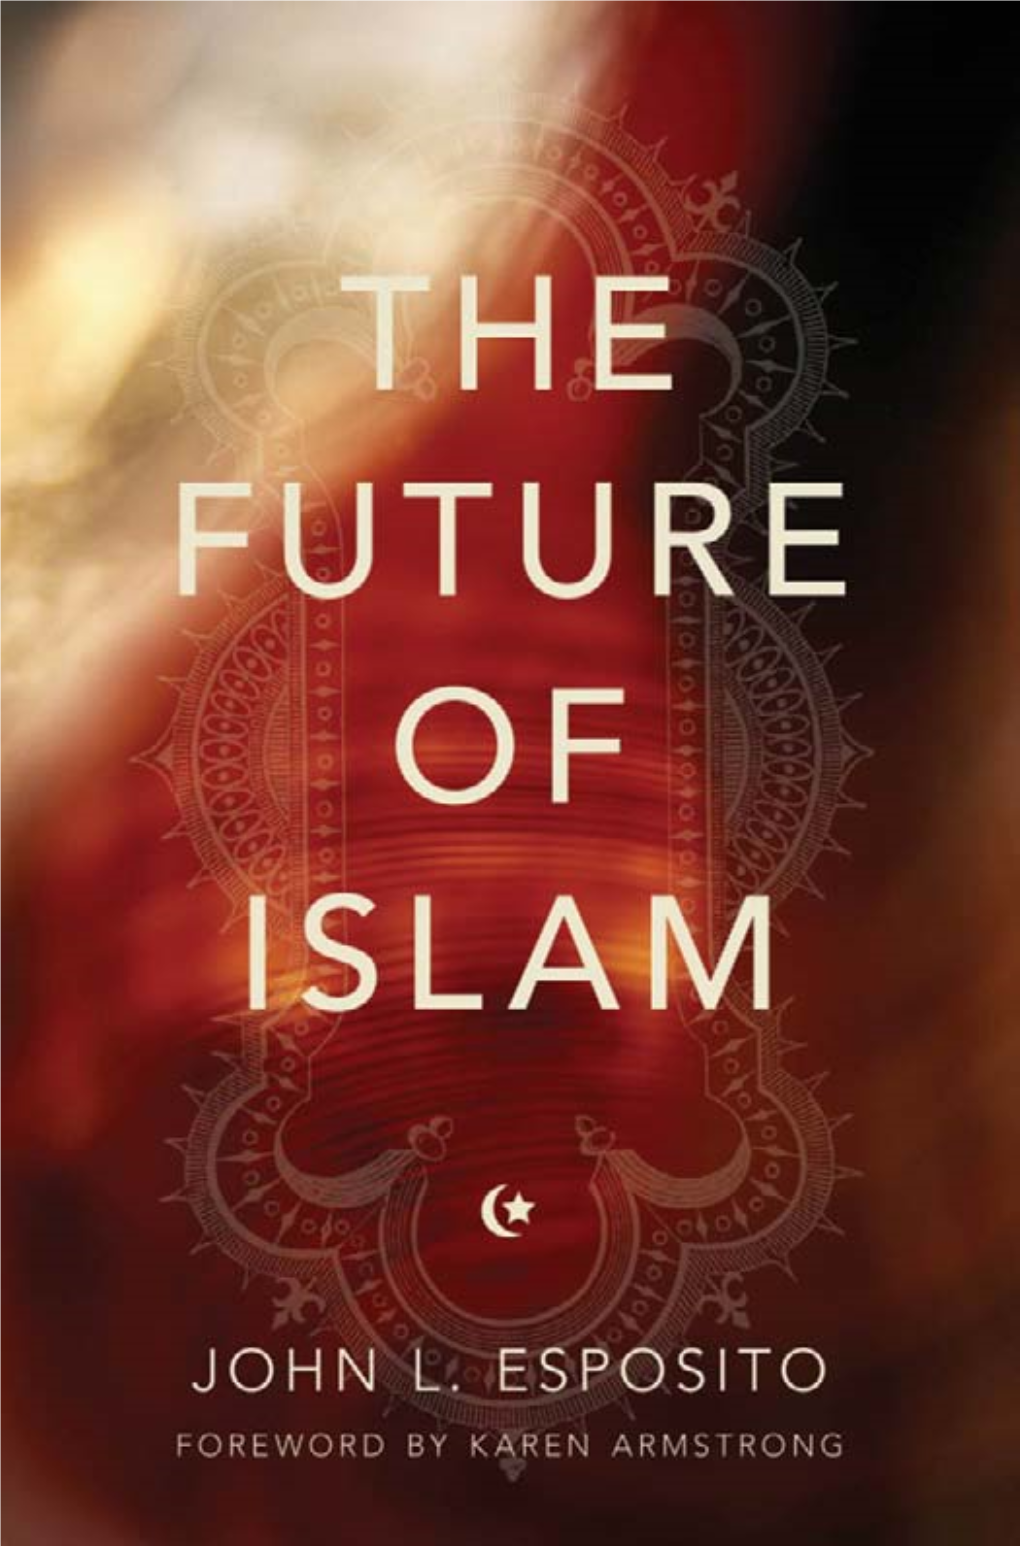 The Future of Islam by John L. Esposito__Z Lib.Org .Pdf